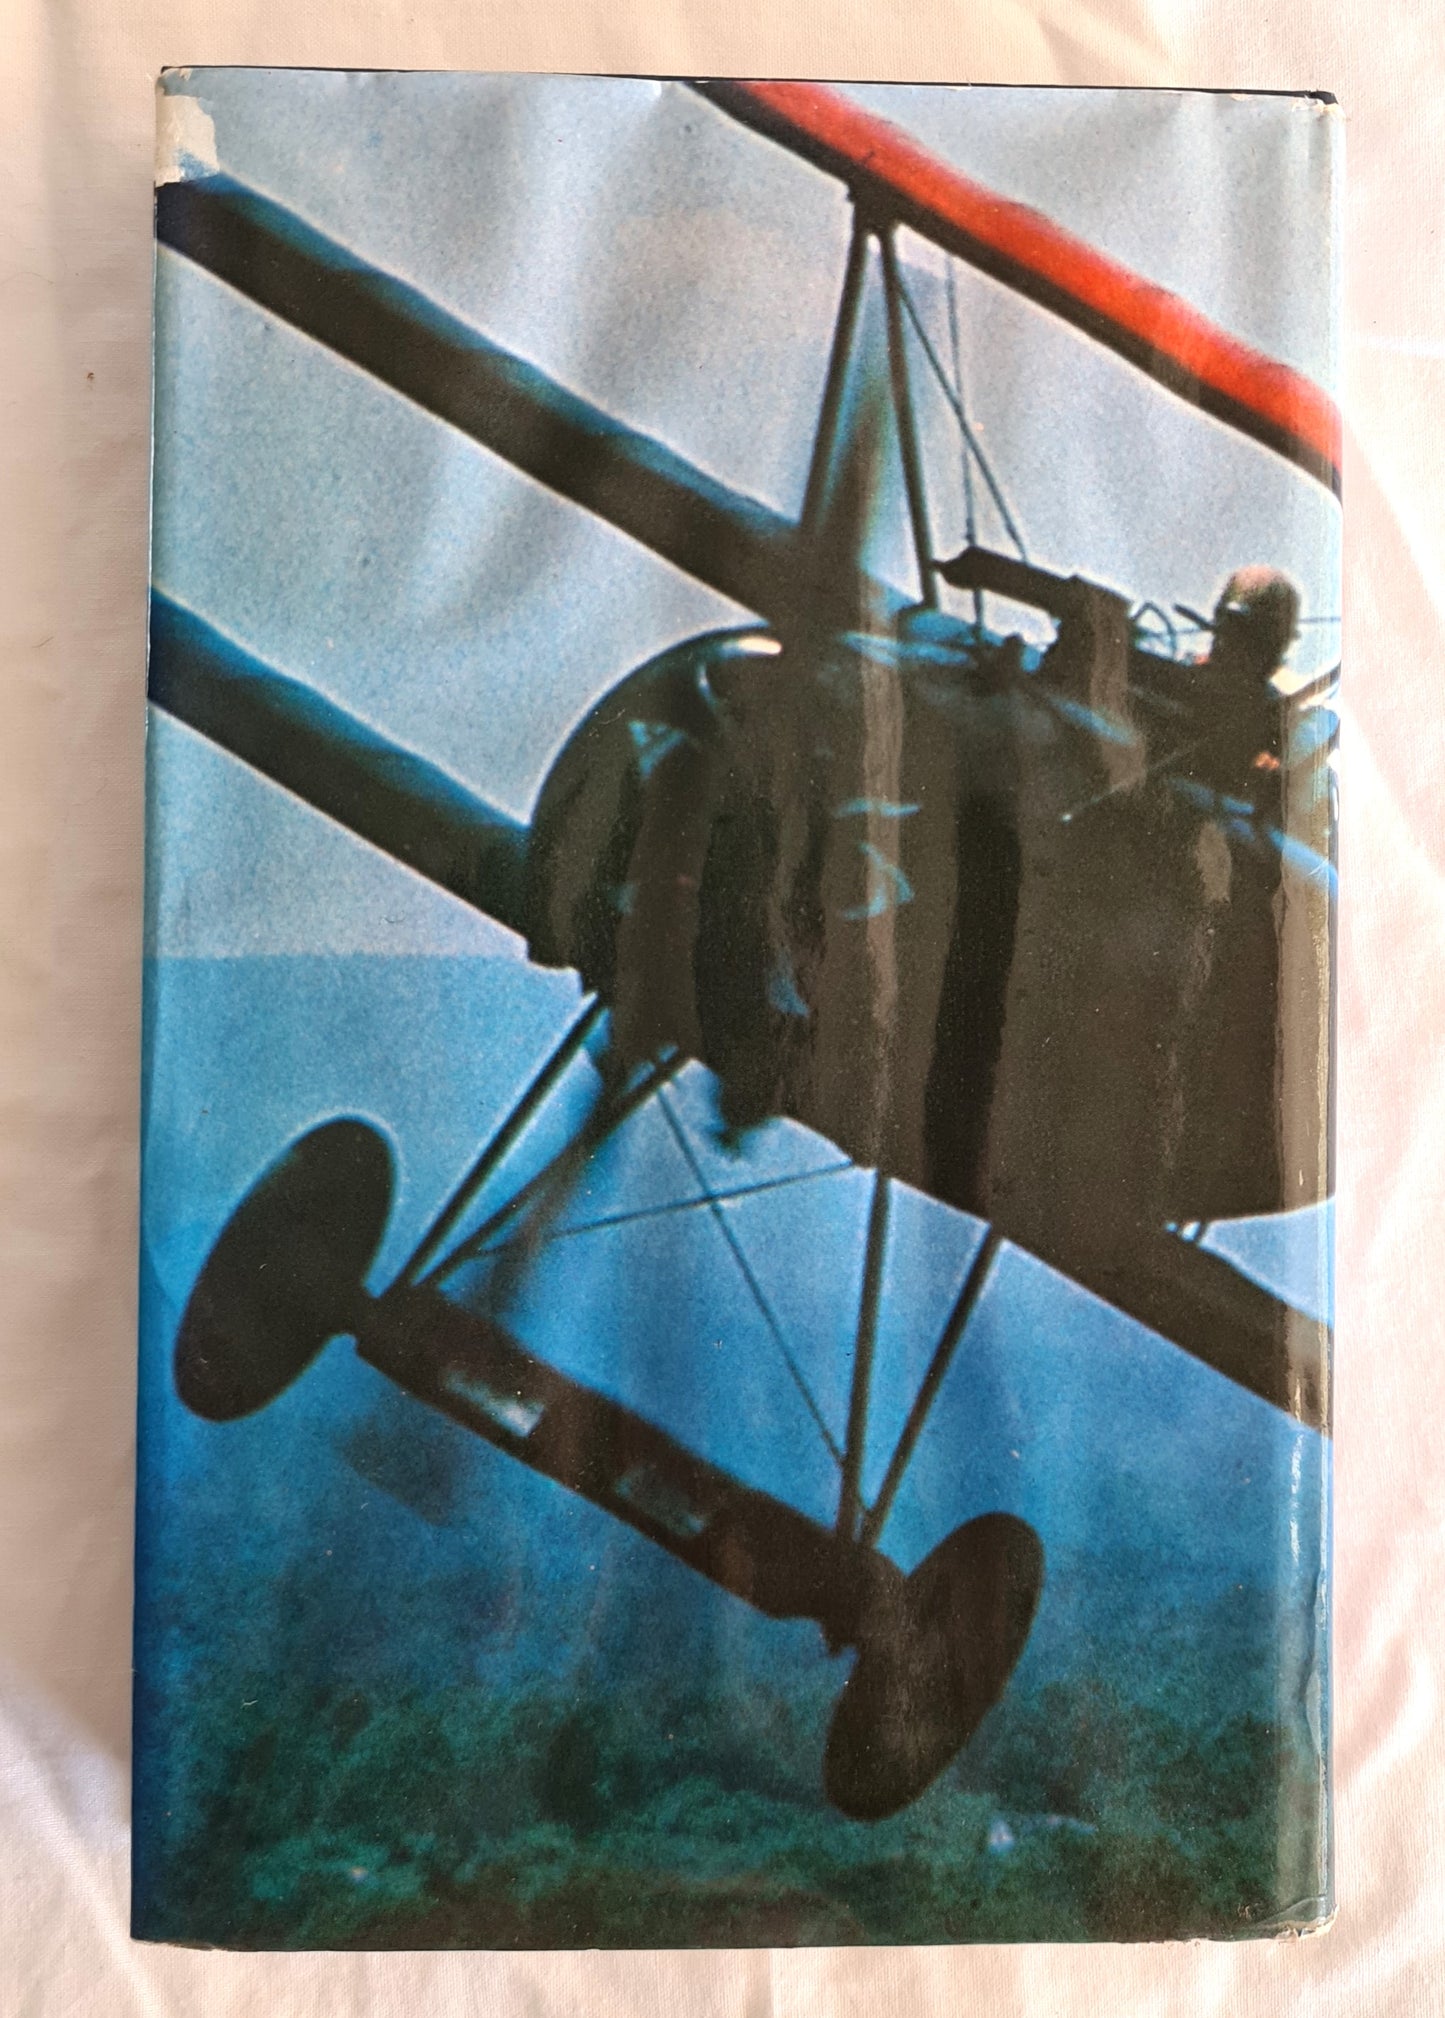 Australian Aviator by Sir Norman Brearley